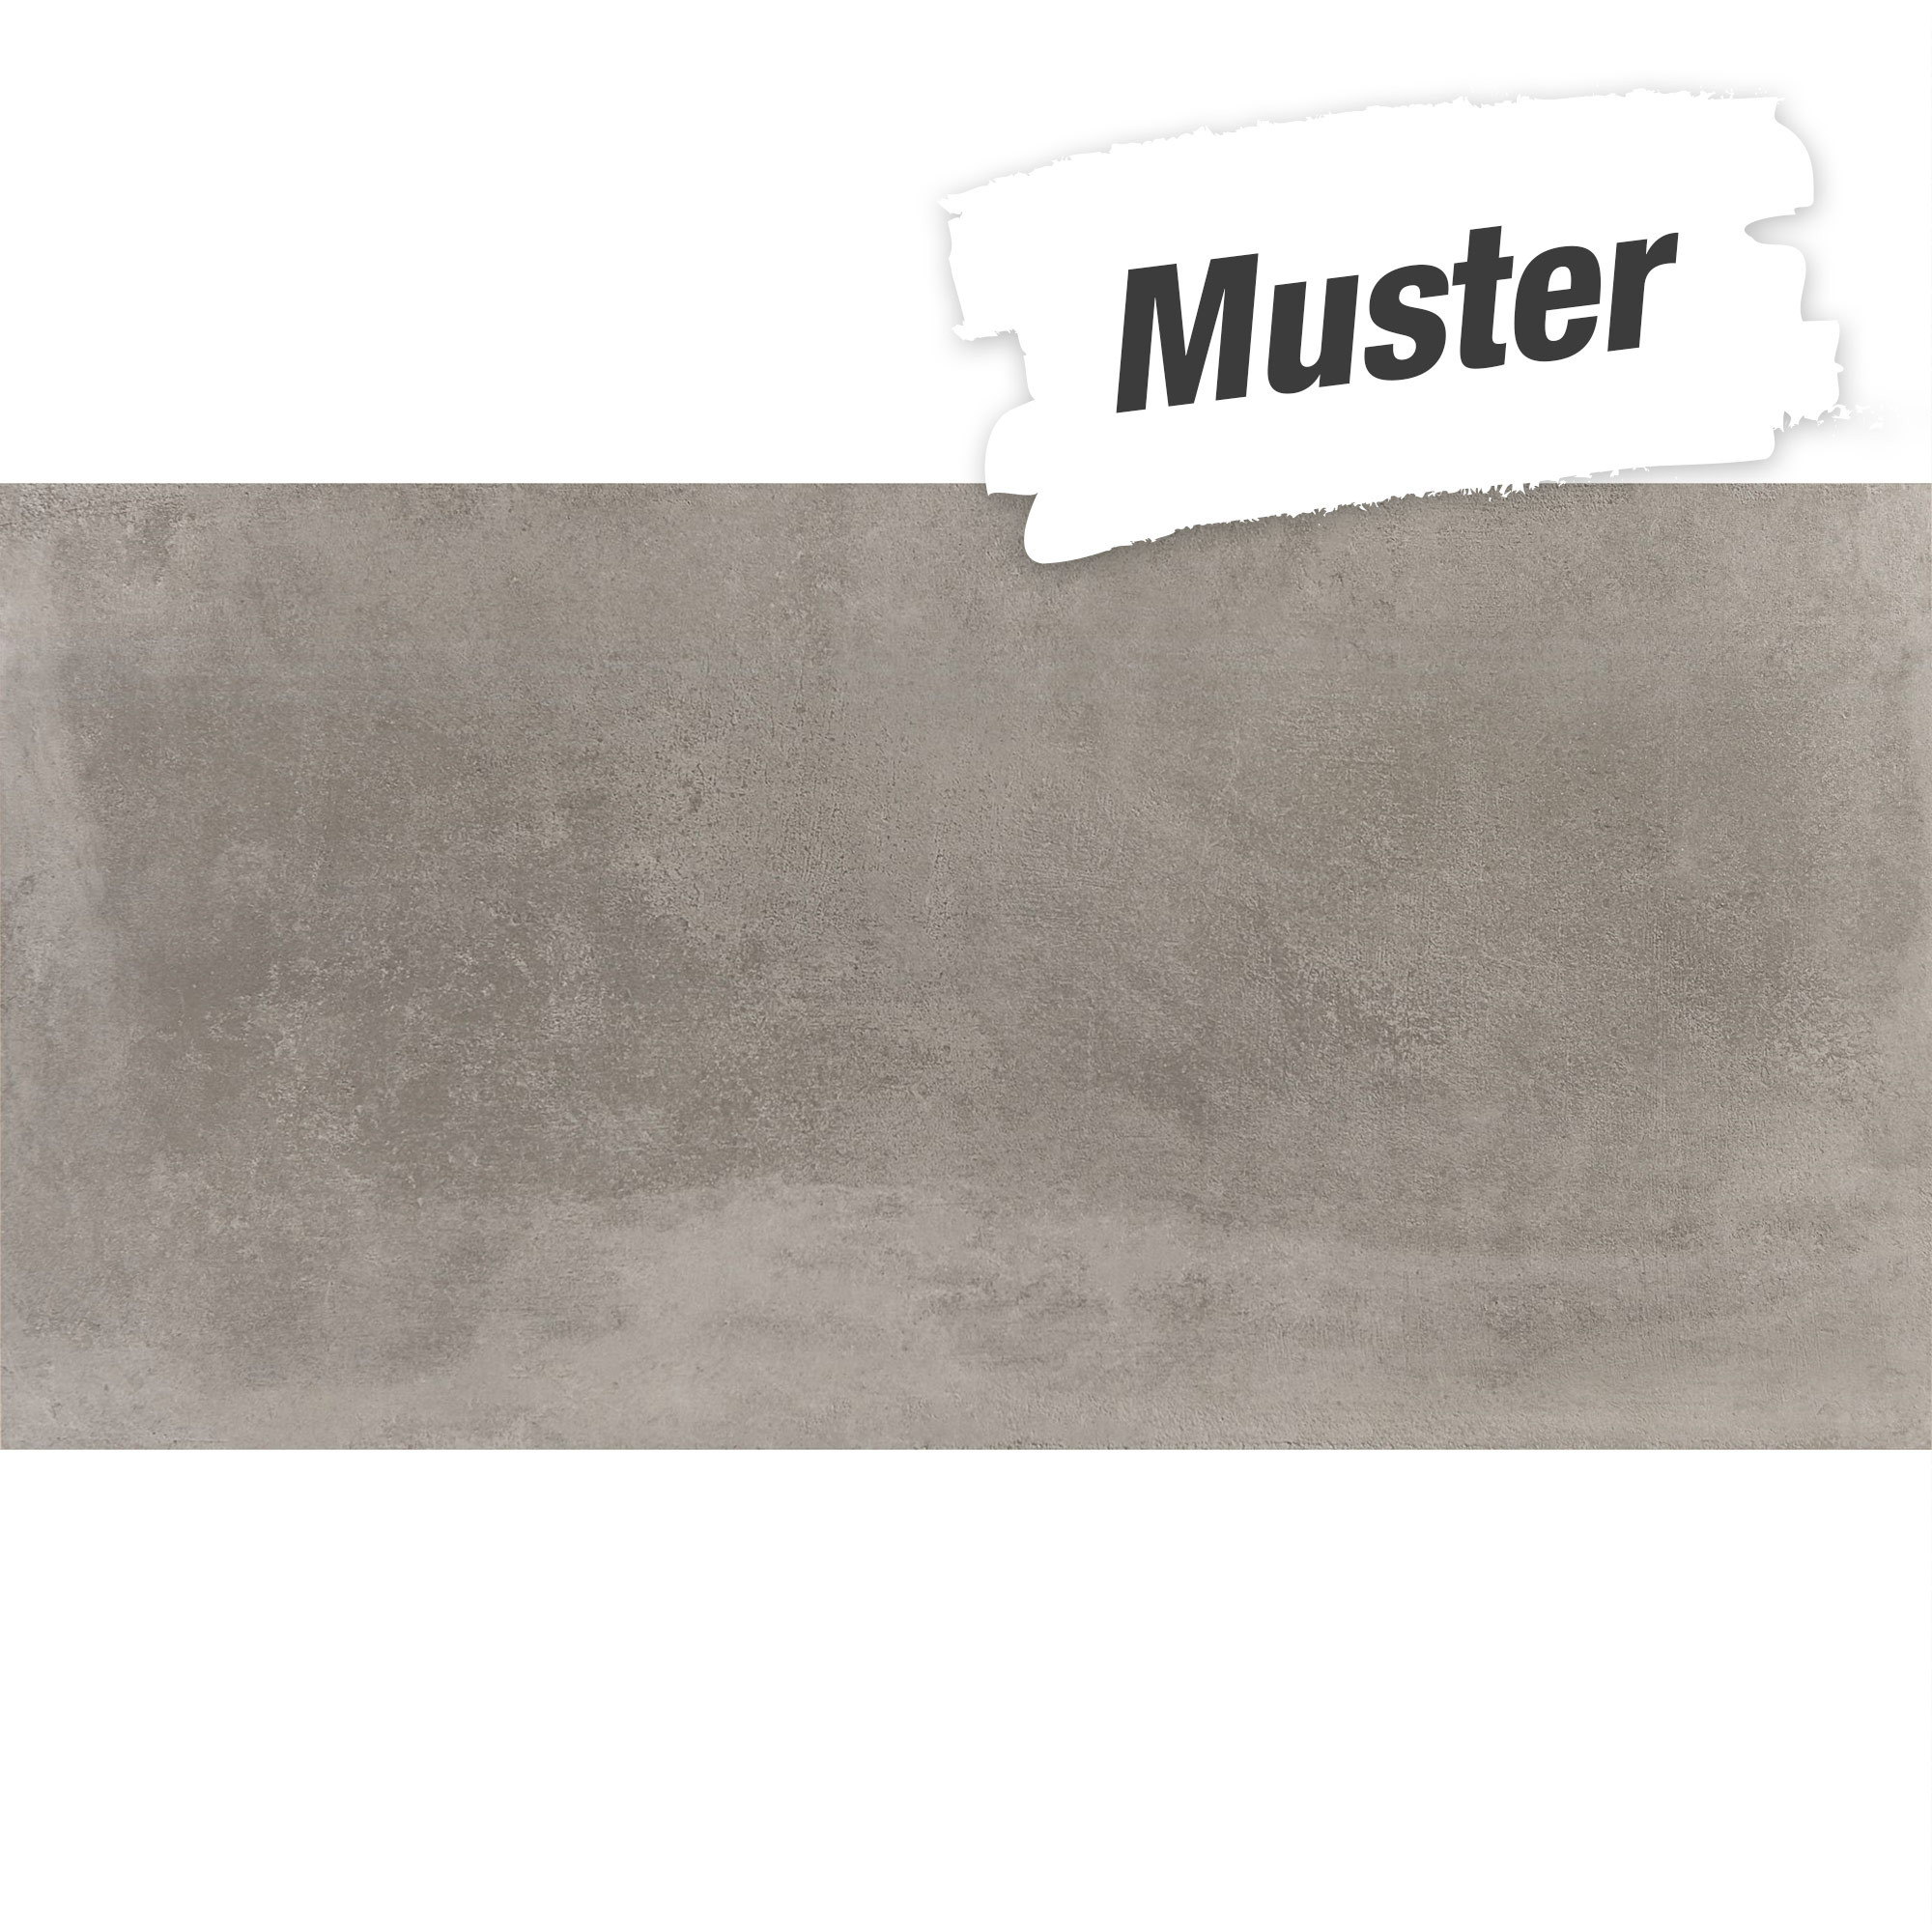 Muster zu Bodenfliese 'Essen' Feinsteinzeug grau 45 x 90 cm + product picture